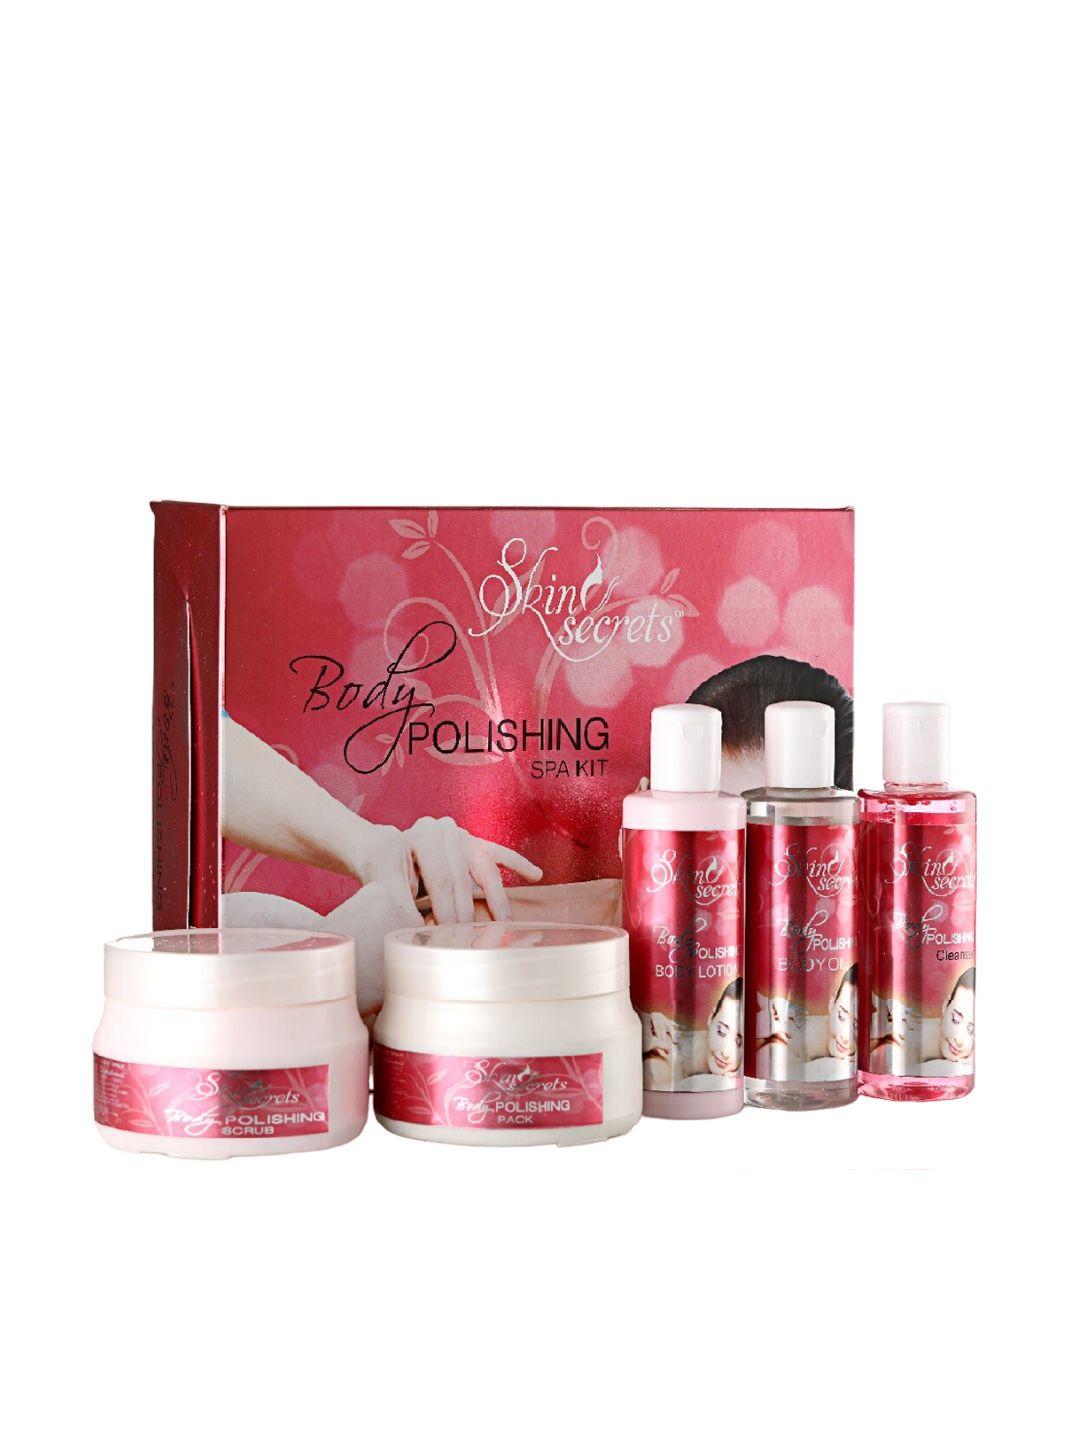 skin secrets set of 5 body polishing spa kit - 1200 g